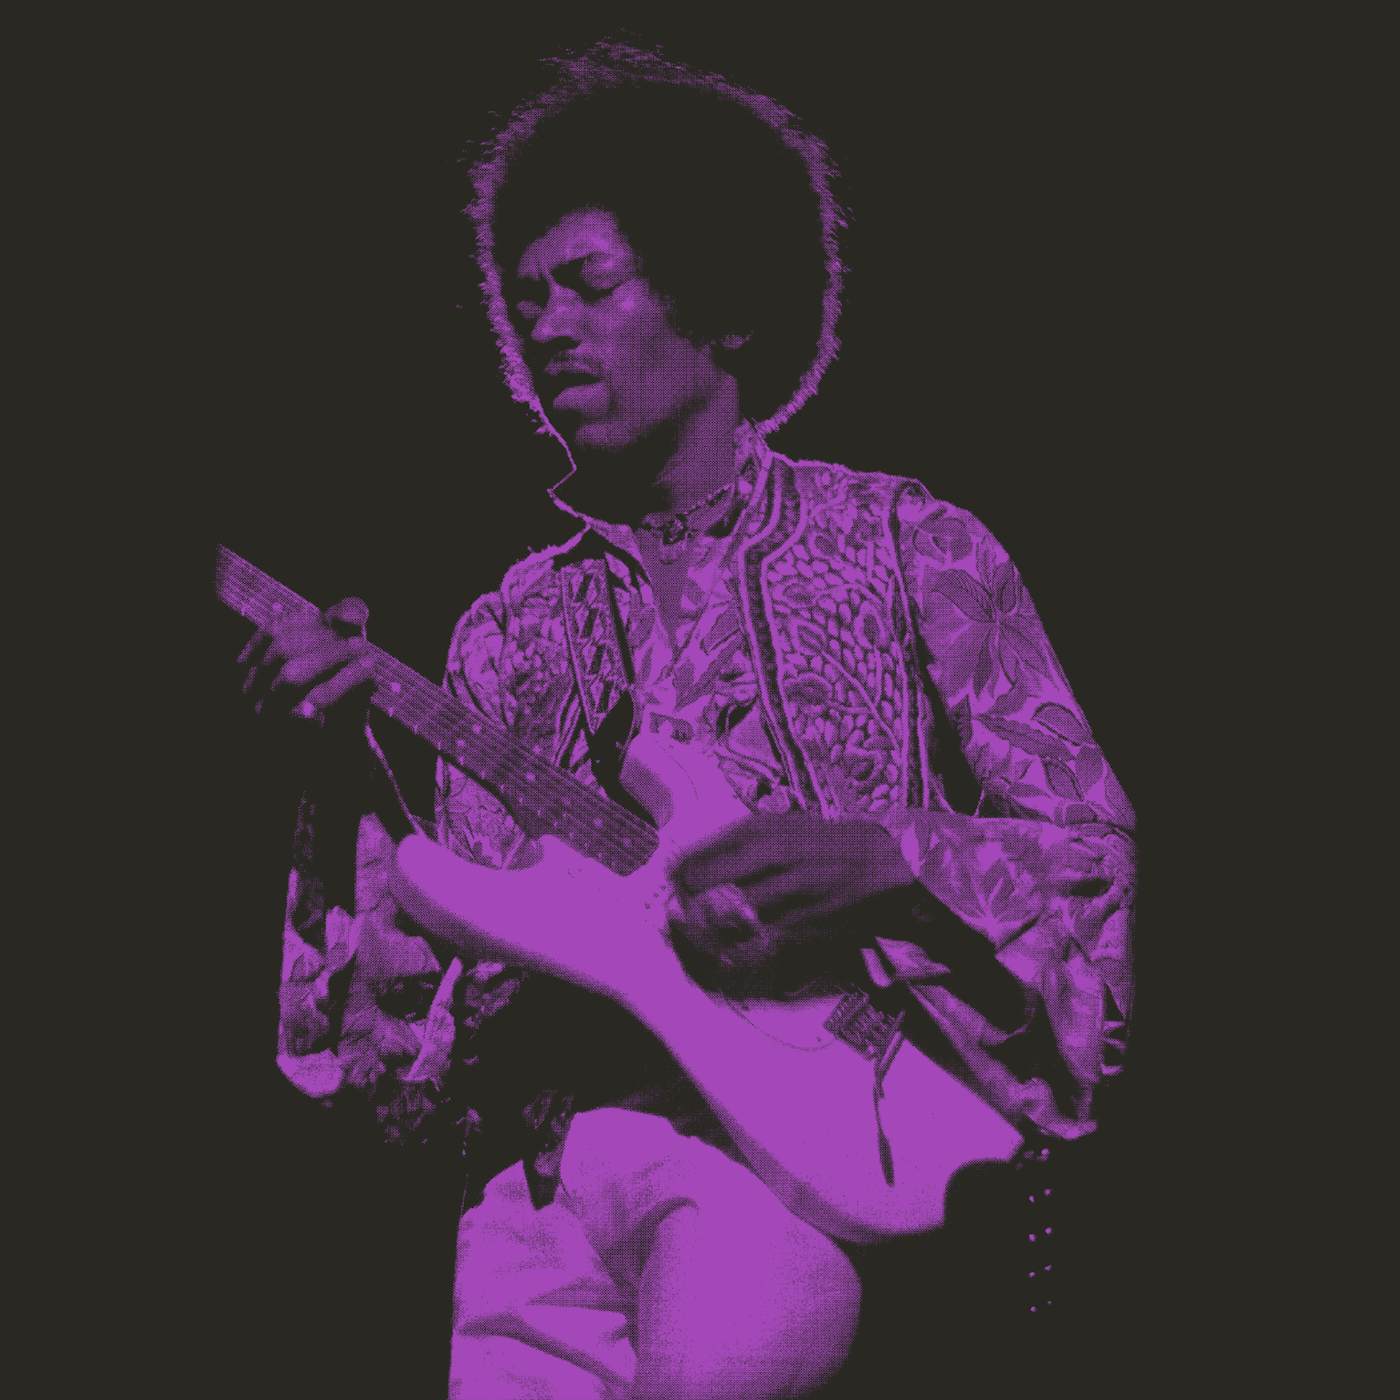 Jimi Hendrix T-Shirt | Purple Haze Jimi Hendrix Shirt